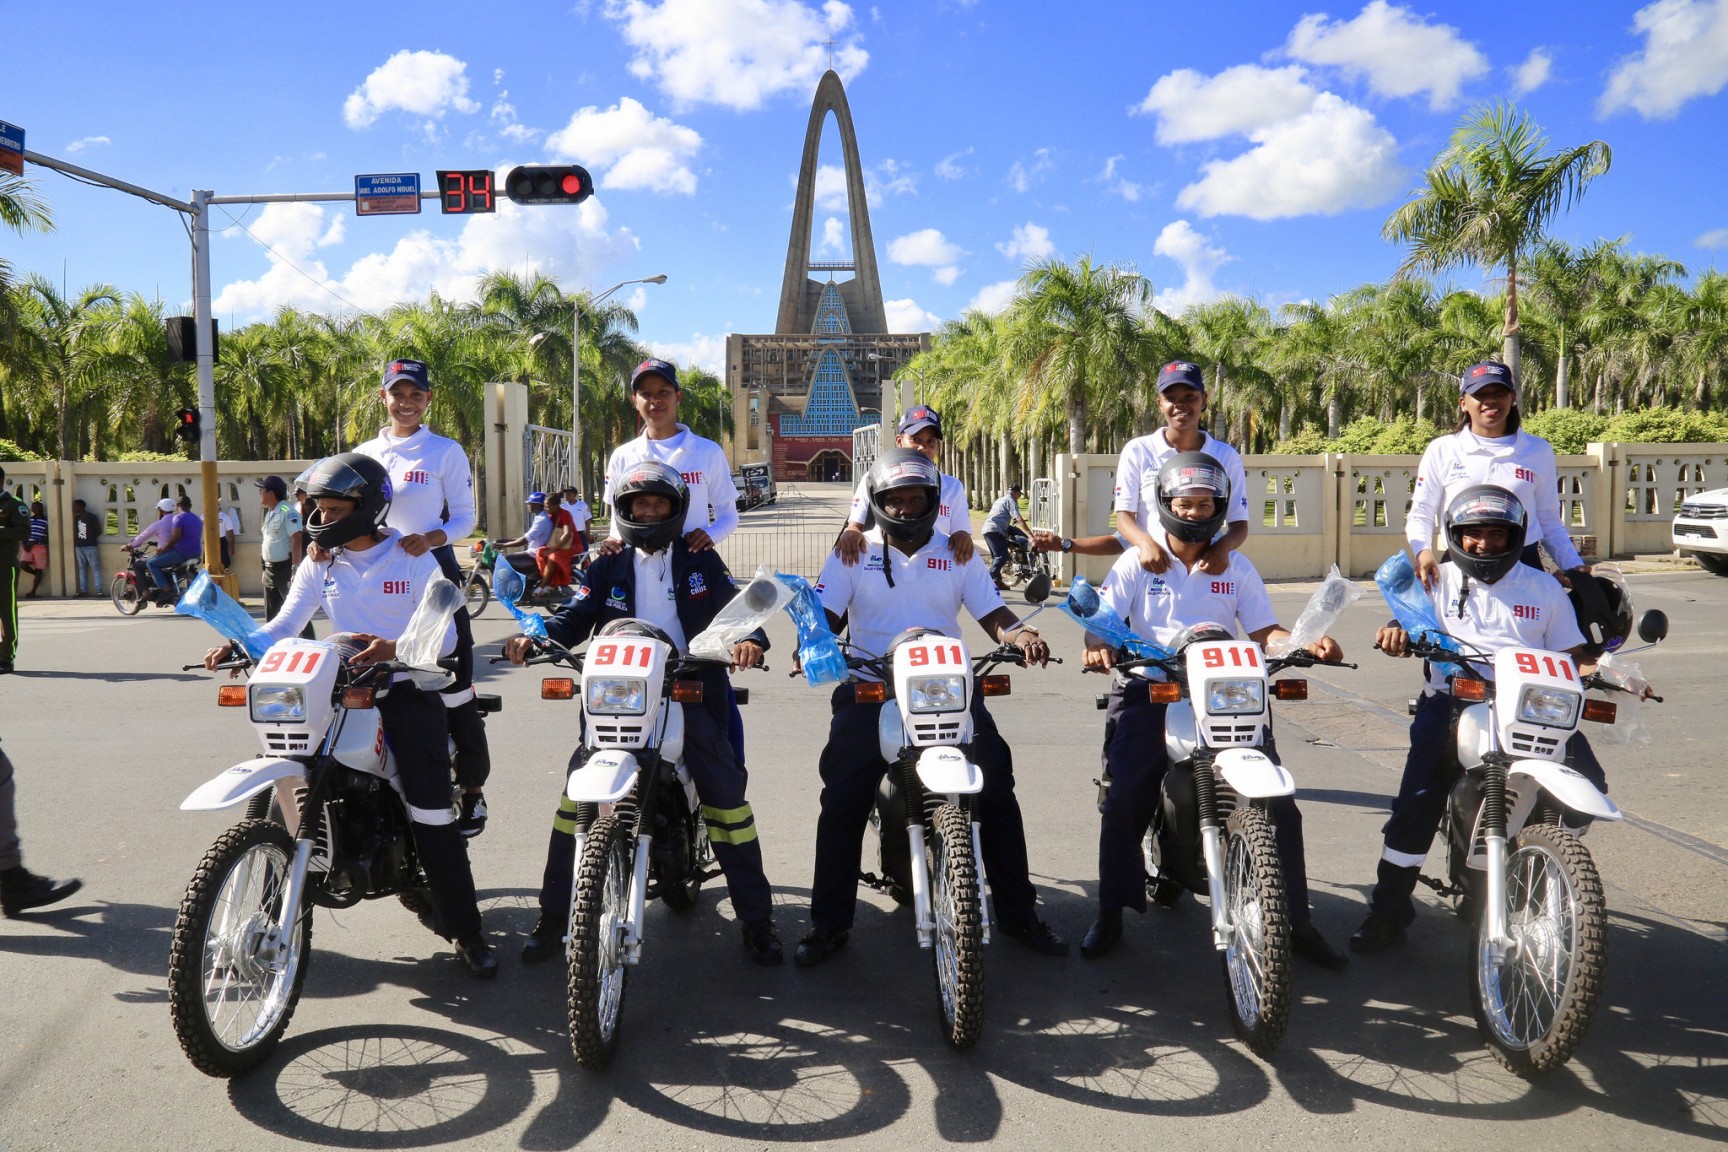 REPÚBLICA DOMINICANA: Presidente Danilo Medina deja en funcionamiento servicio 911 en Higüey